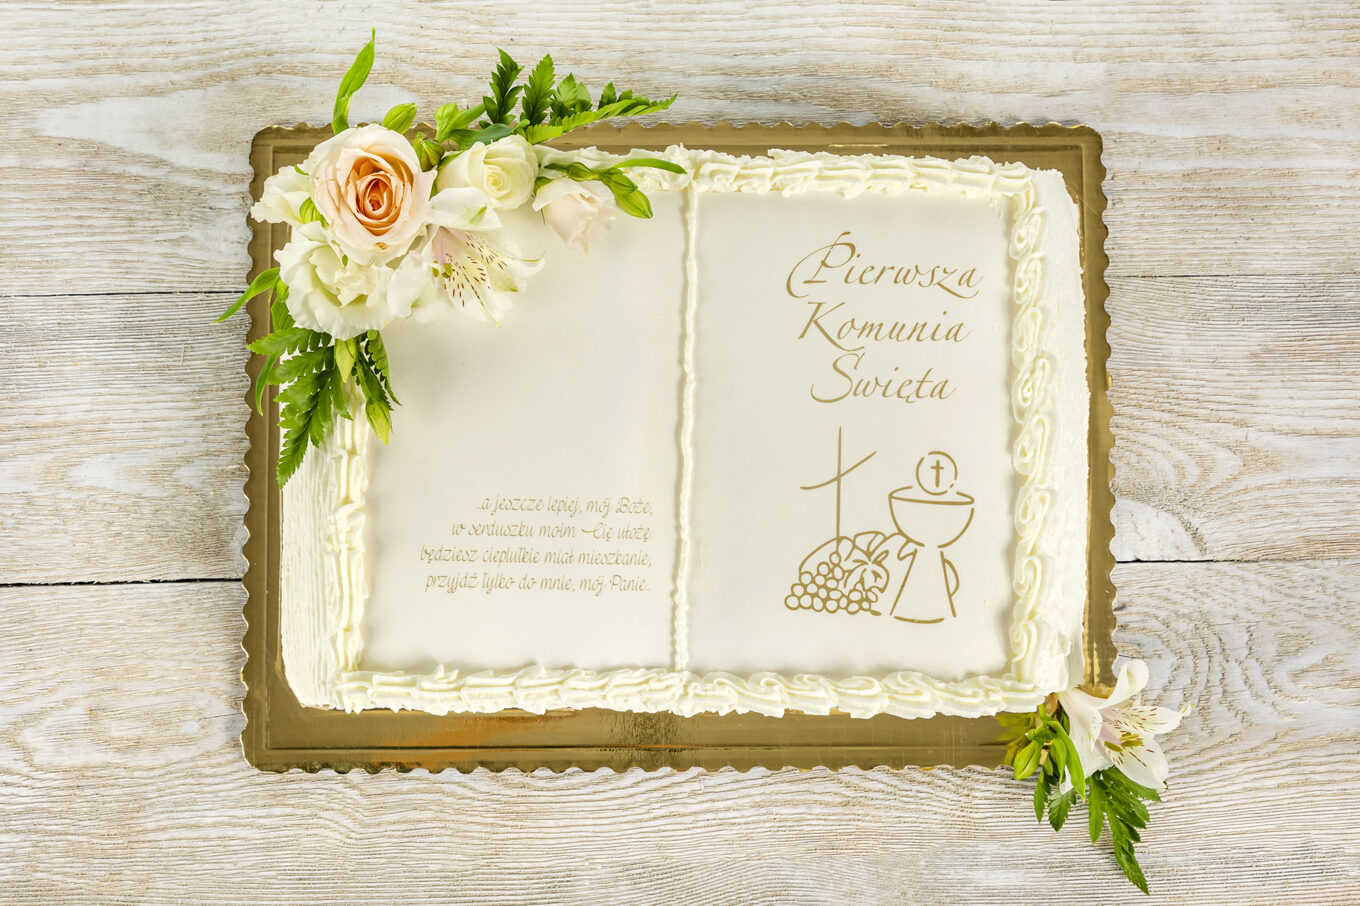 Libro de tartas flores para comunión Cukiernia Jacek Placek es sinónimo del sabor de las tartas caseras elaboradas con productos naturales.